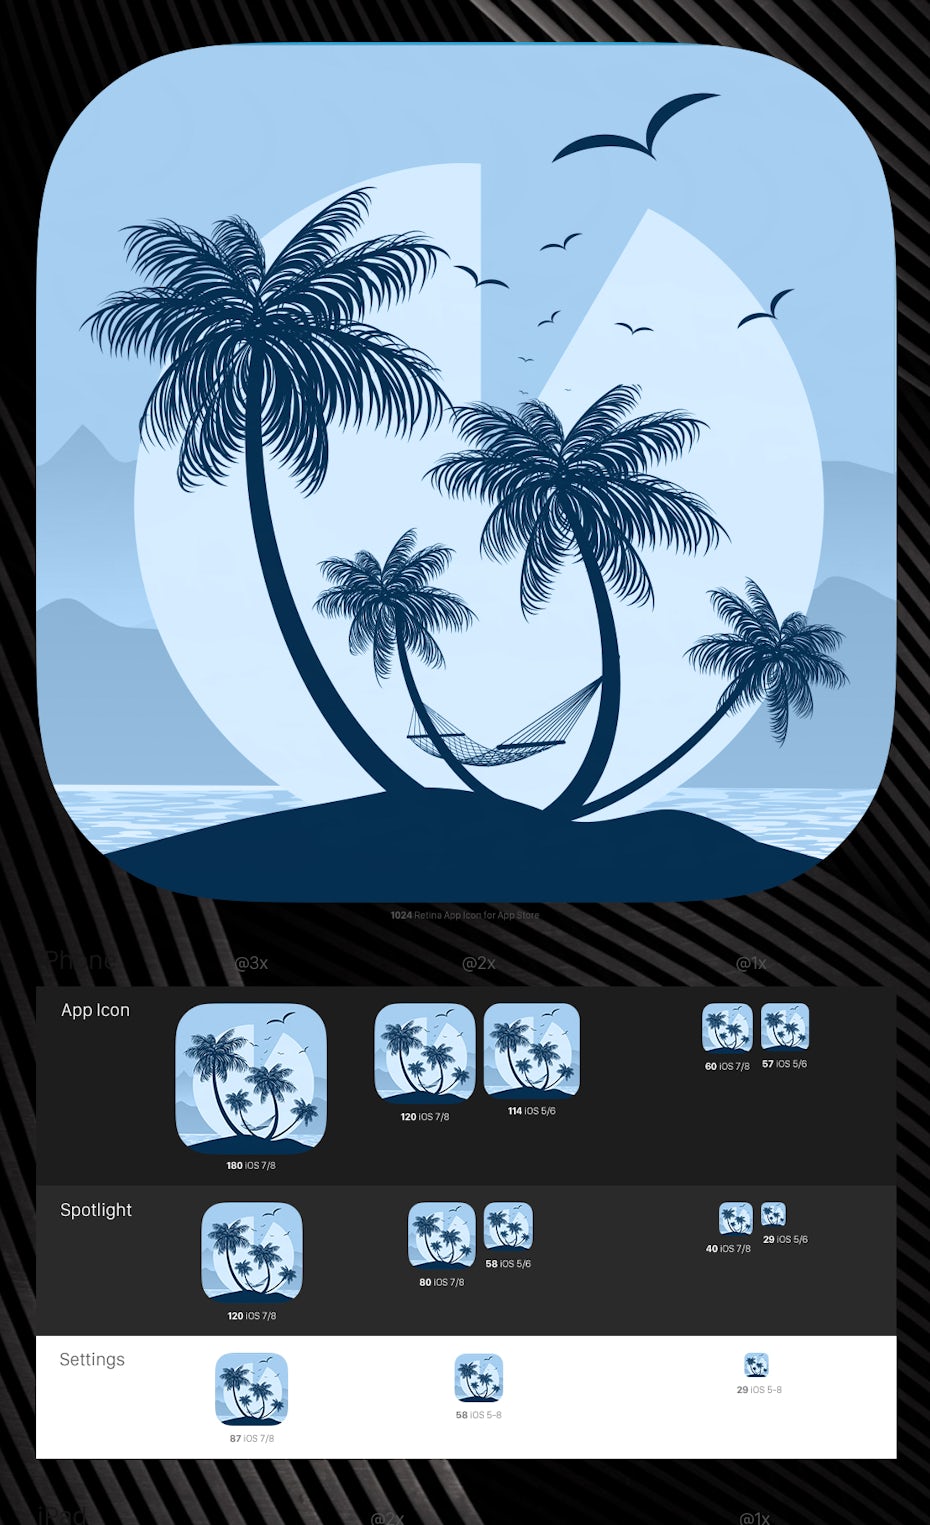 Wie Man Ein App Icon Designt Der Ultimative Guide 99designs